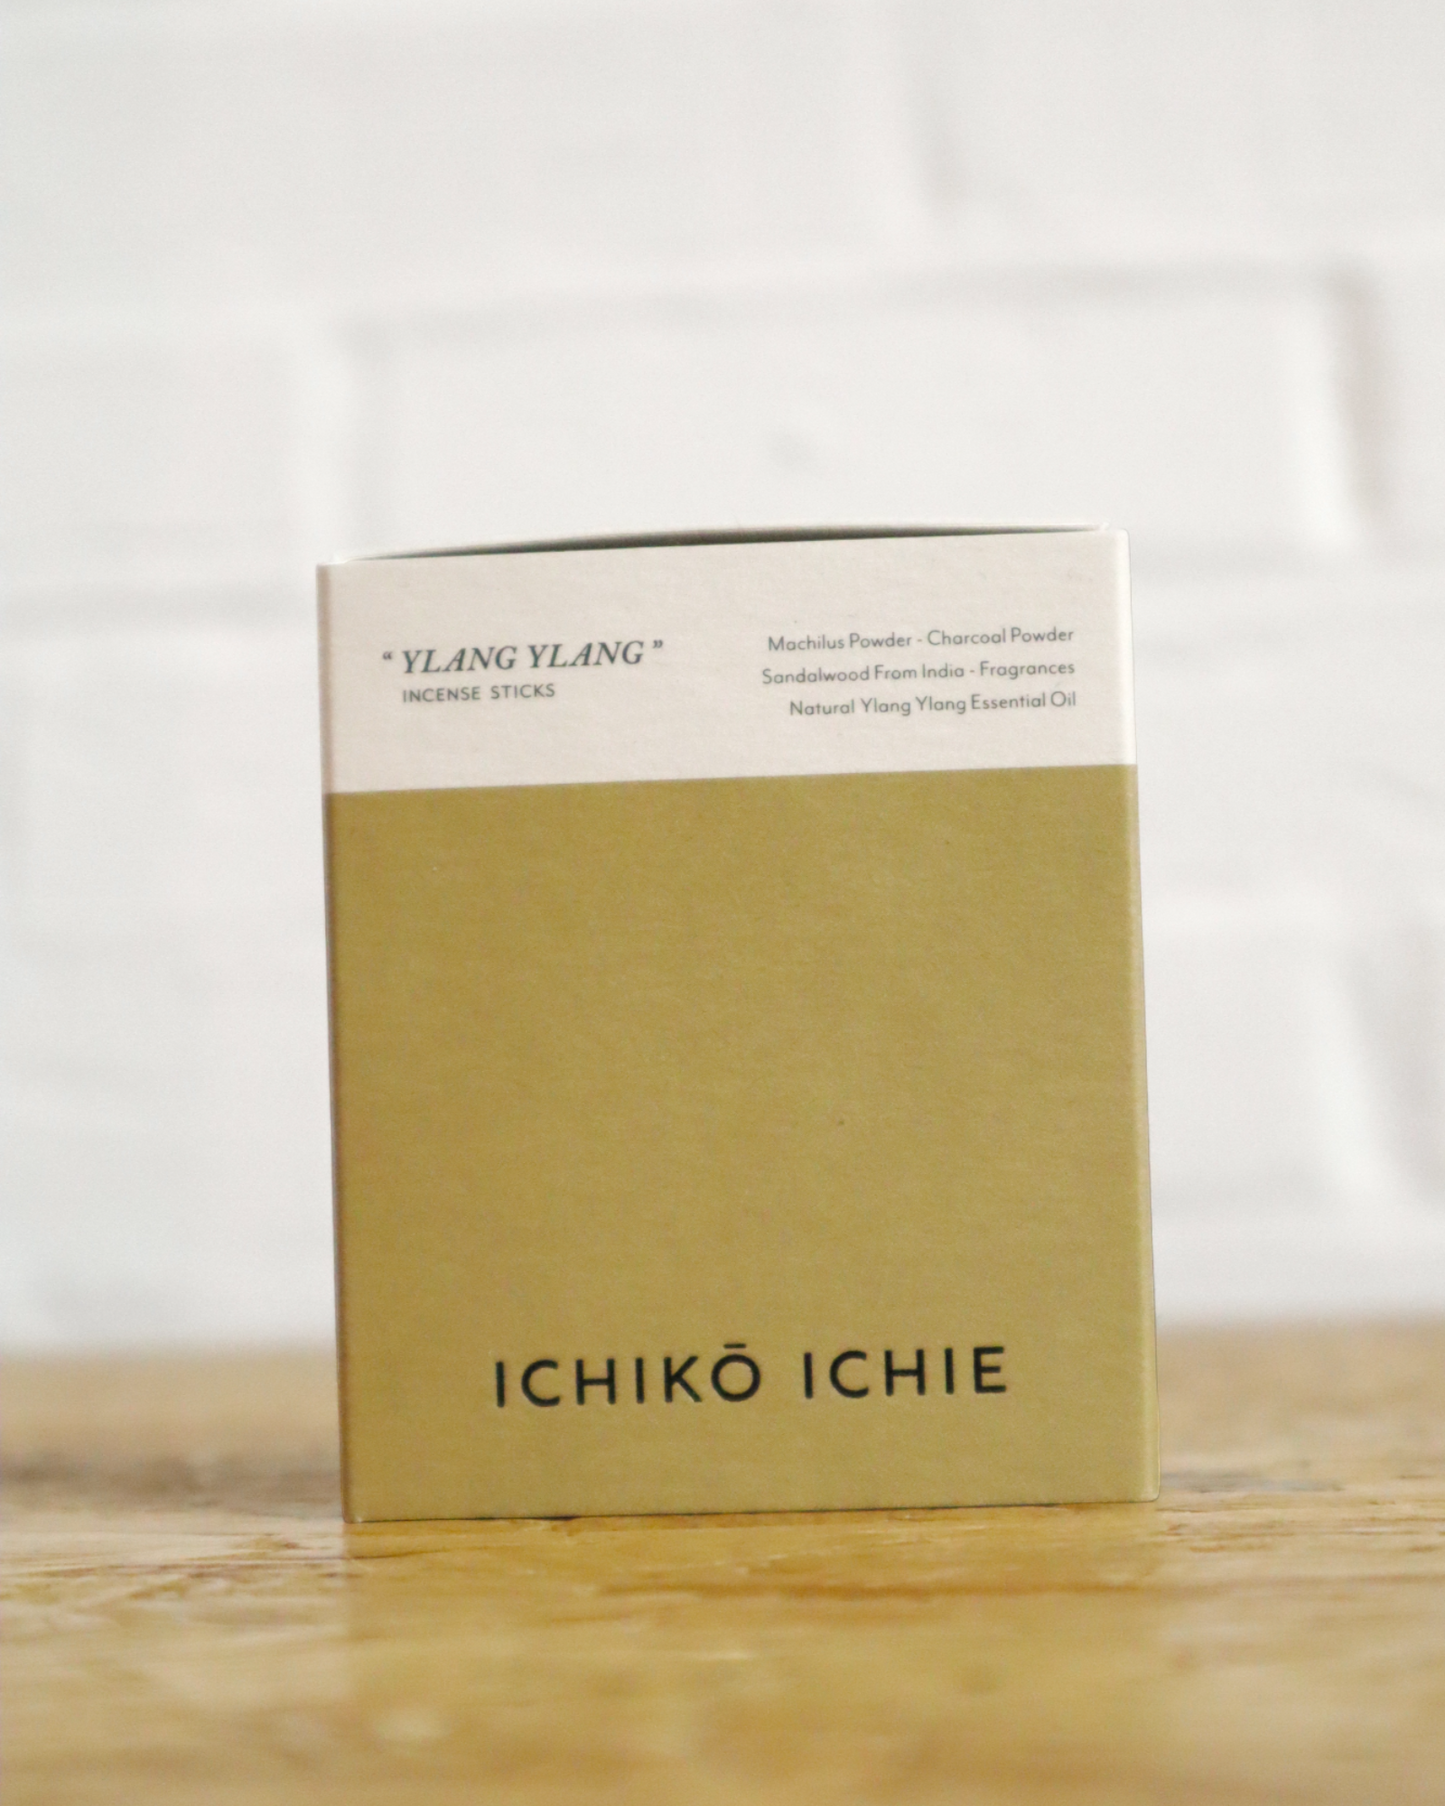 
                  
                    ICHIKO ICHIE Incense "YLANG YLANG"
                  
                